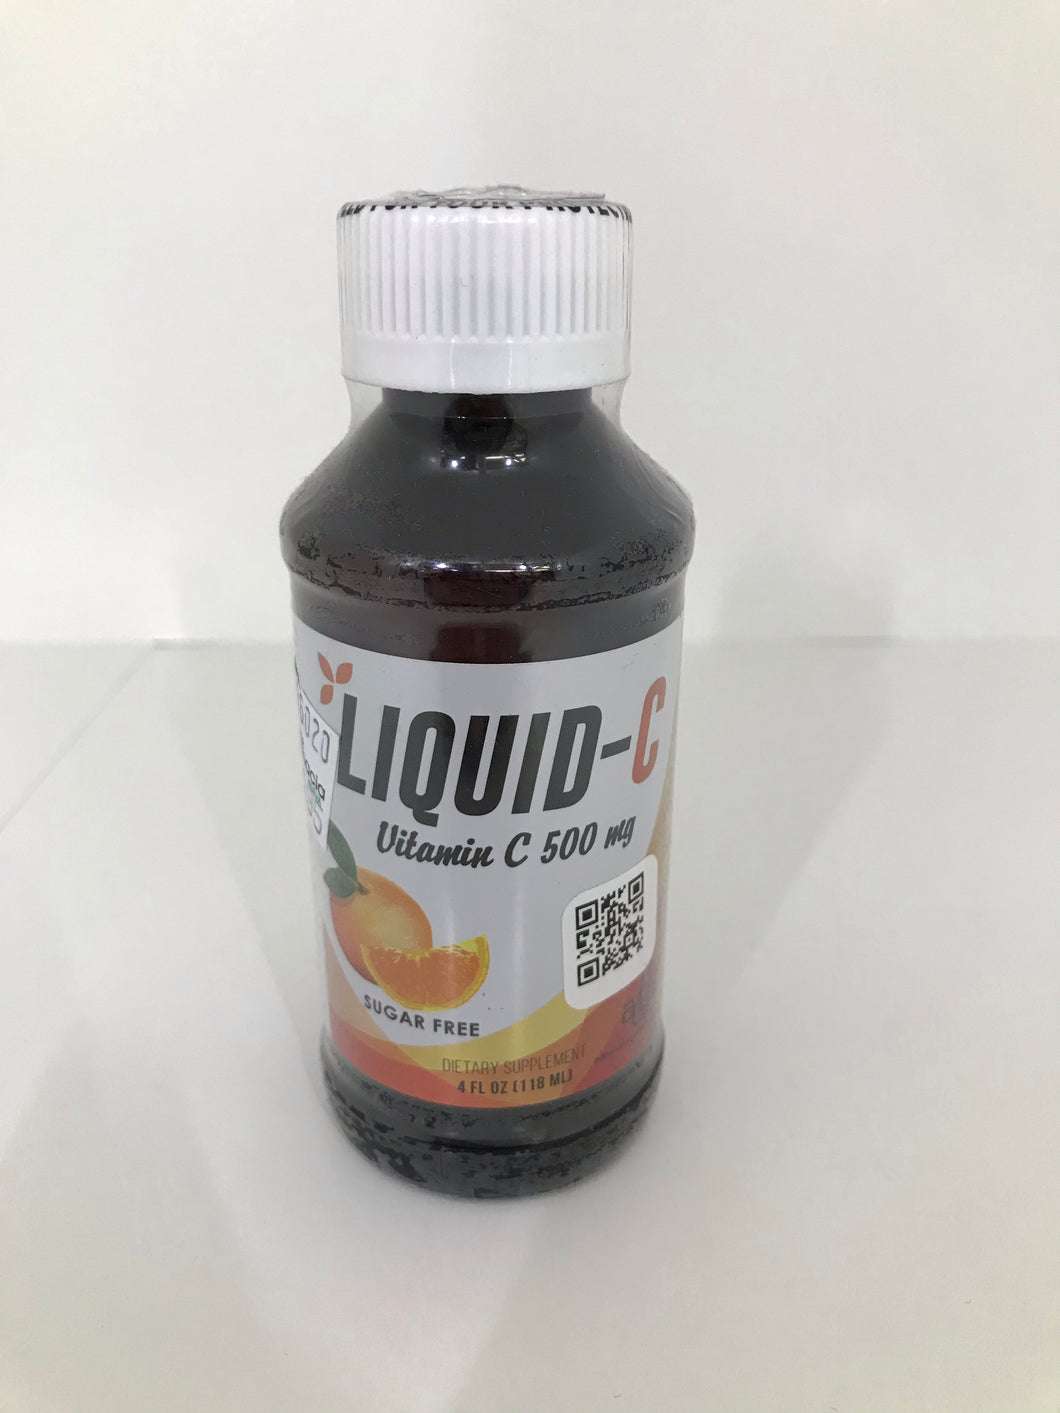 Liquid-C vitamin C 500 mg